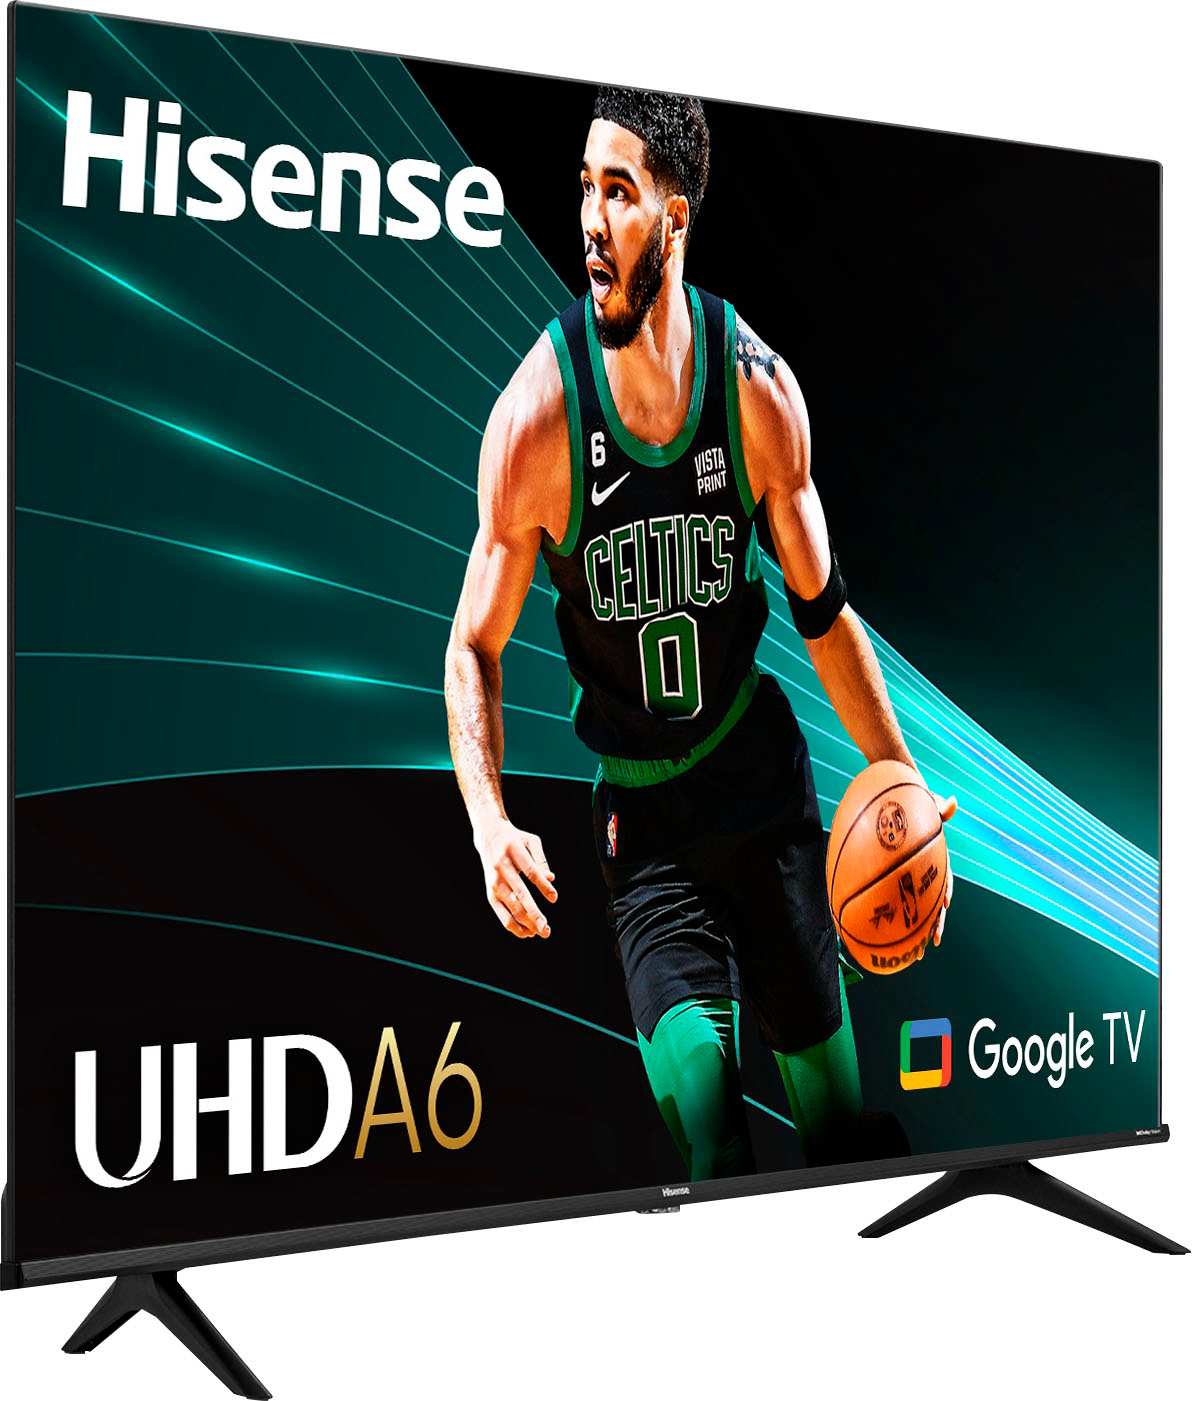 Smart Tv Portátil Hisense Series 50a6h Led Google Tv 4k 50 - FEBO